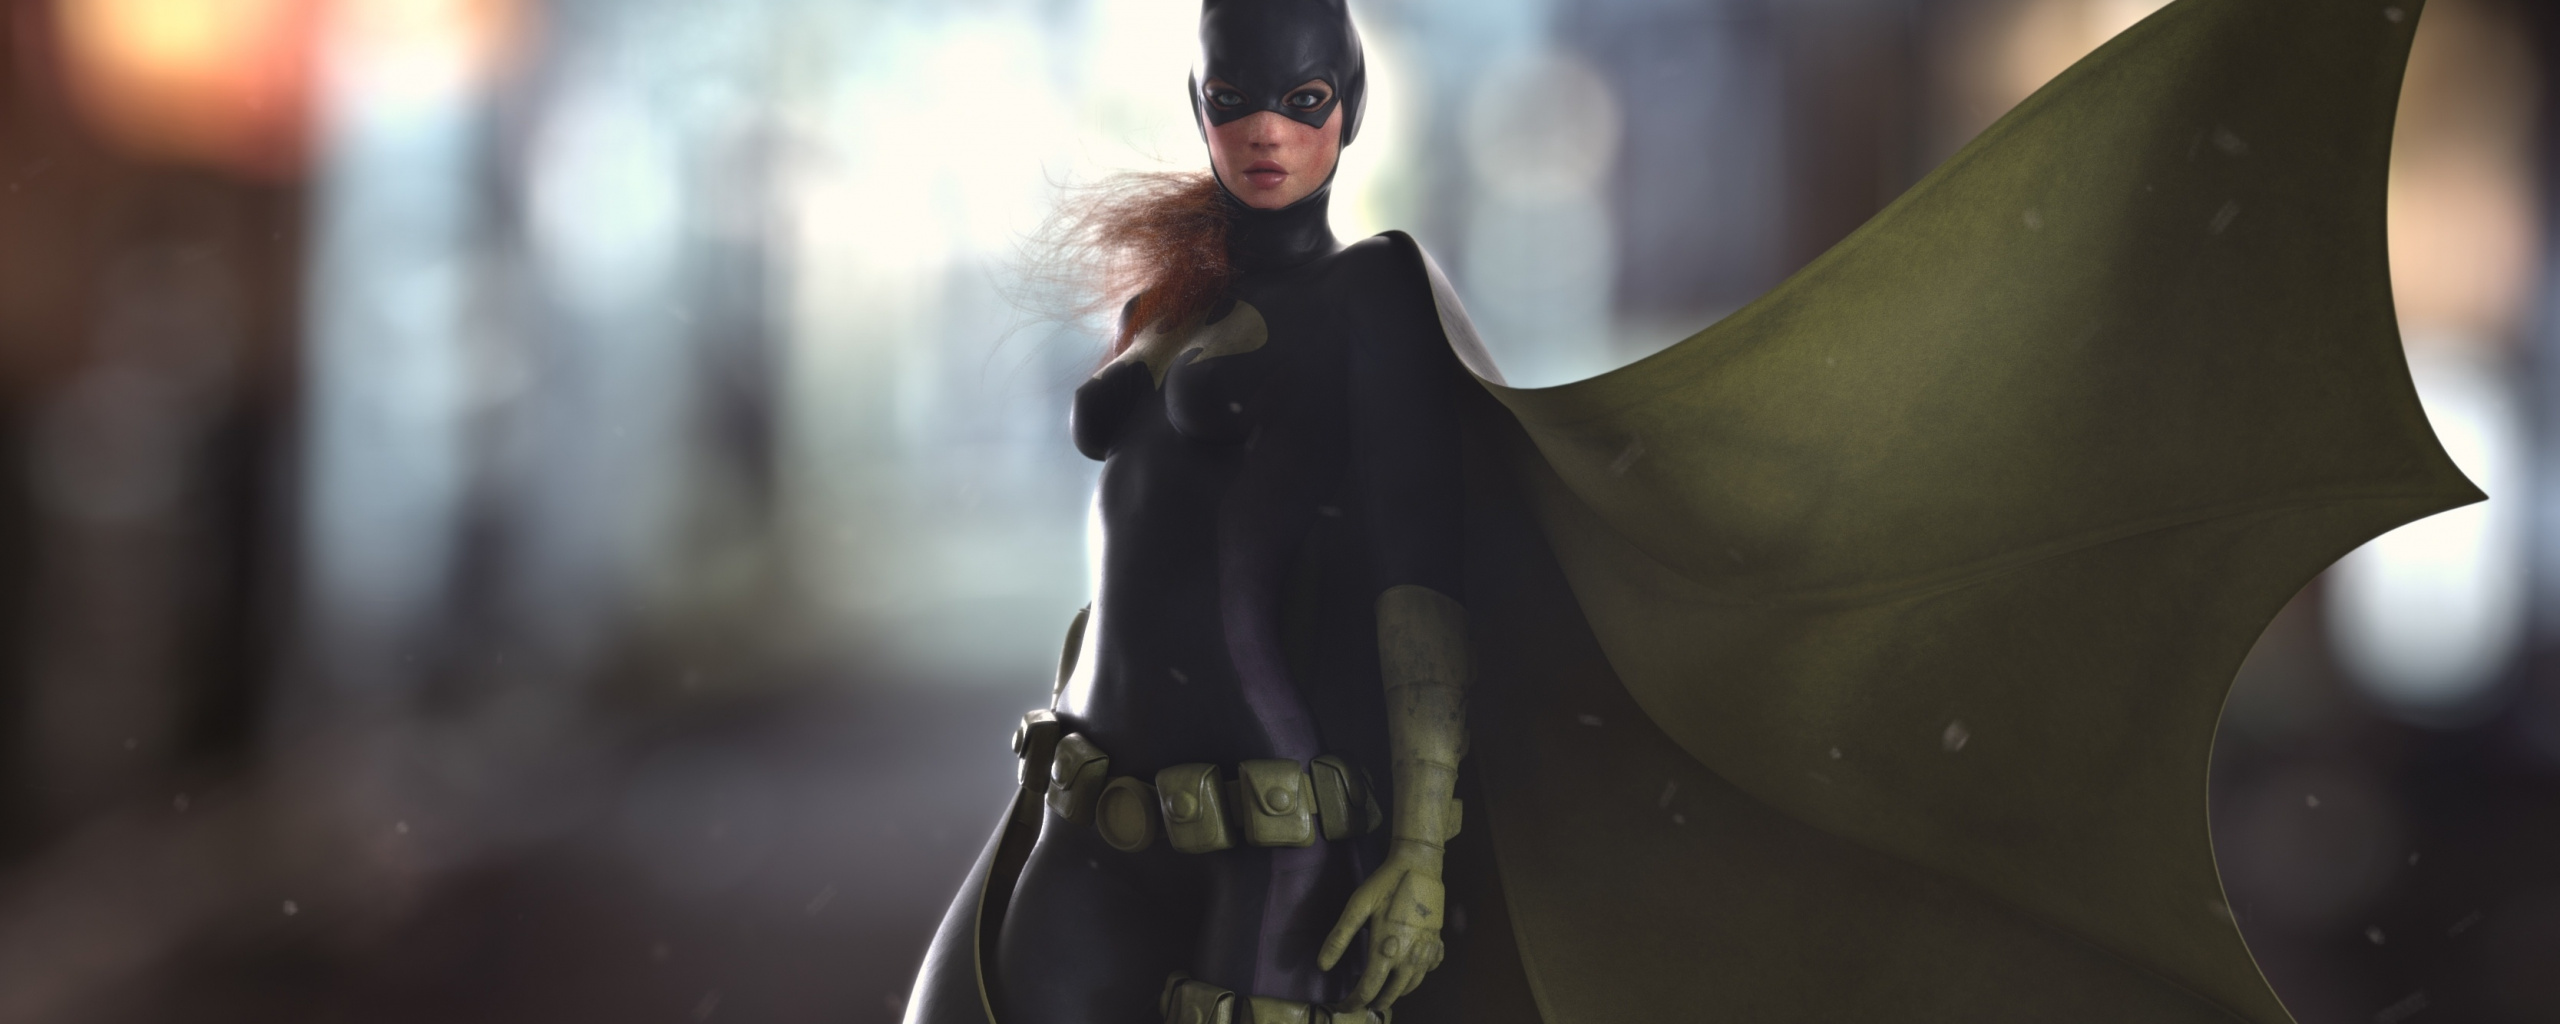 Batgirl, Batwoman, Superhero, Artwork, 2019, Wallpaper - 4k Ultra Hd Wallpapers Batgirl 4k - HD Wallpaper 